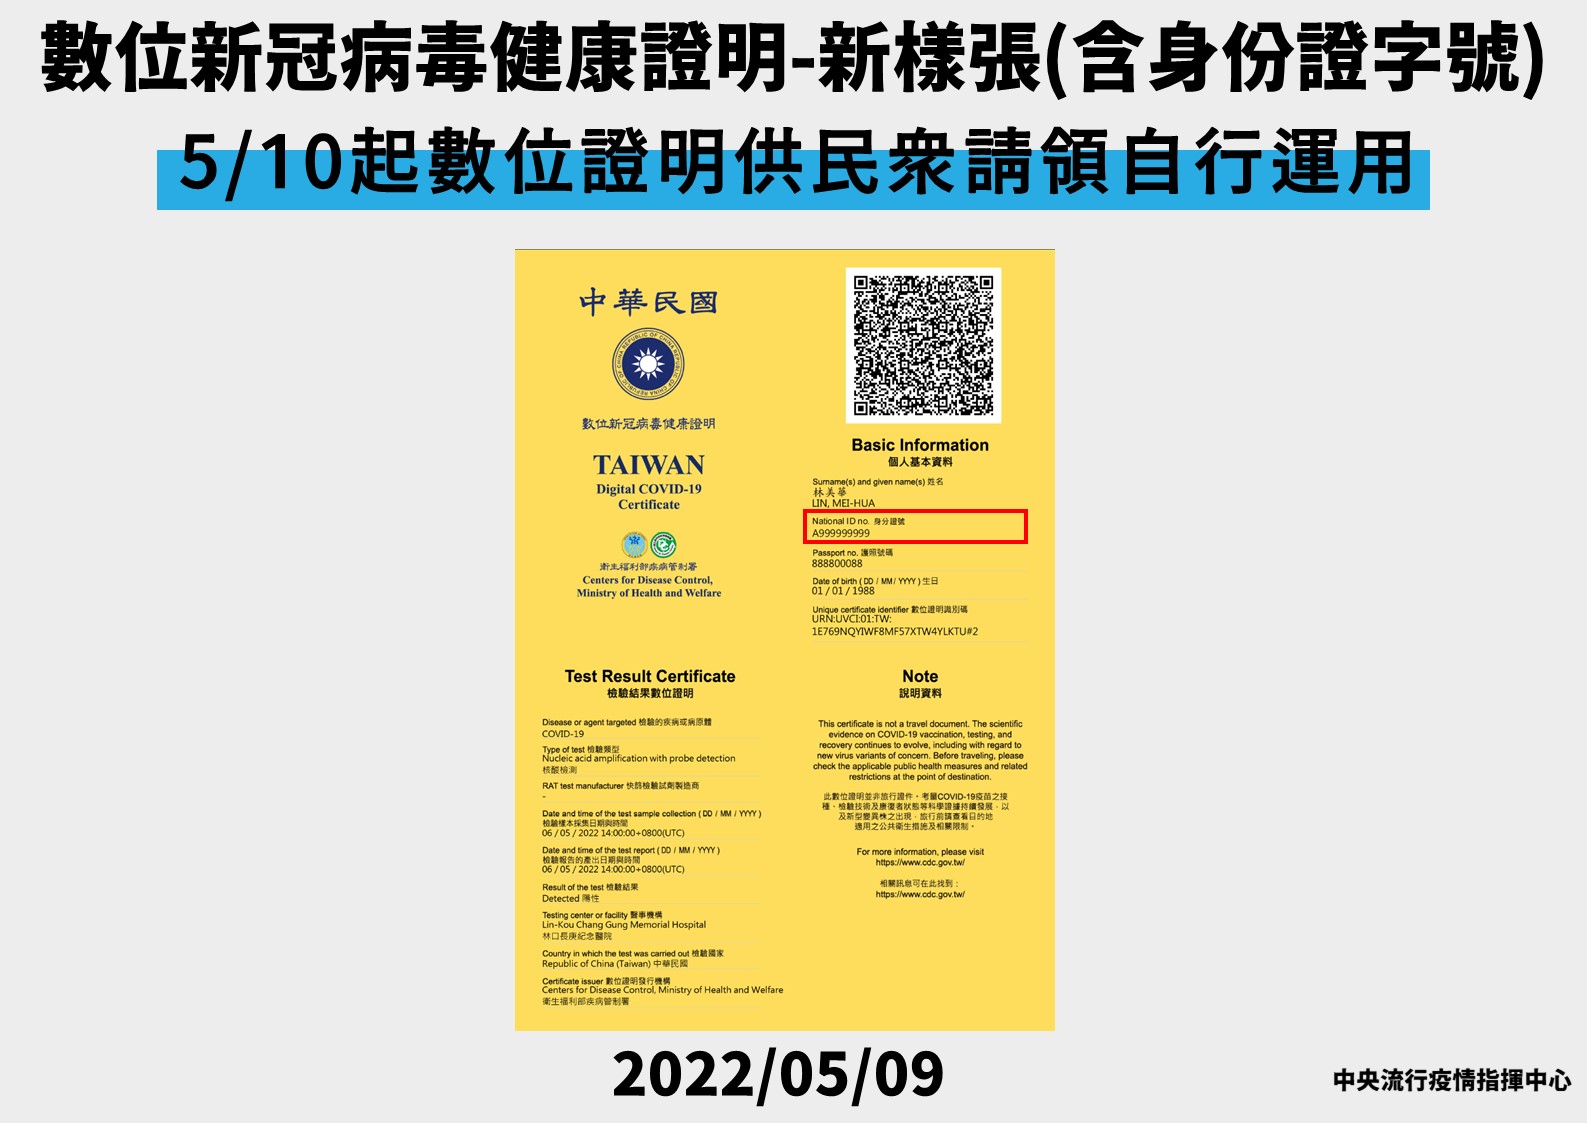 0509-資訊處數位新冠病毒健康證明-申請流程記者會手版